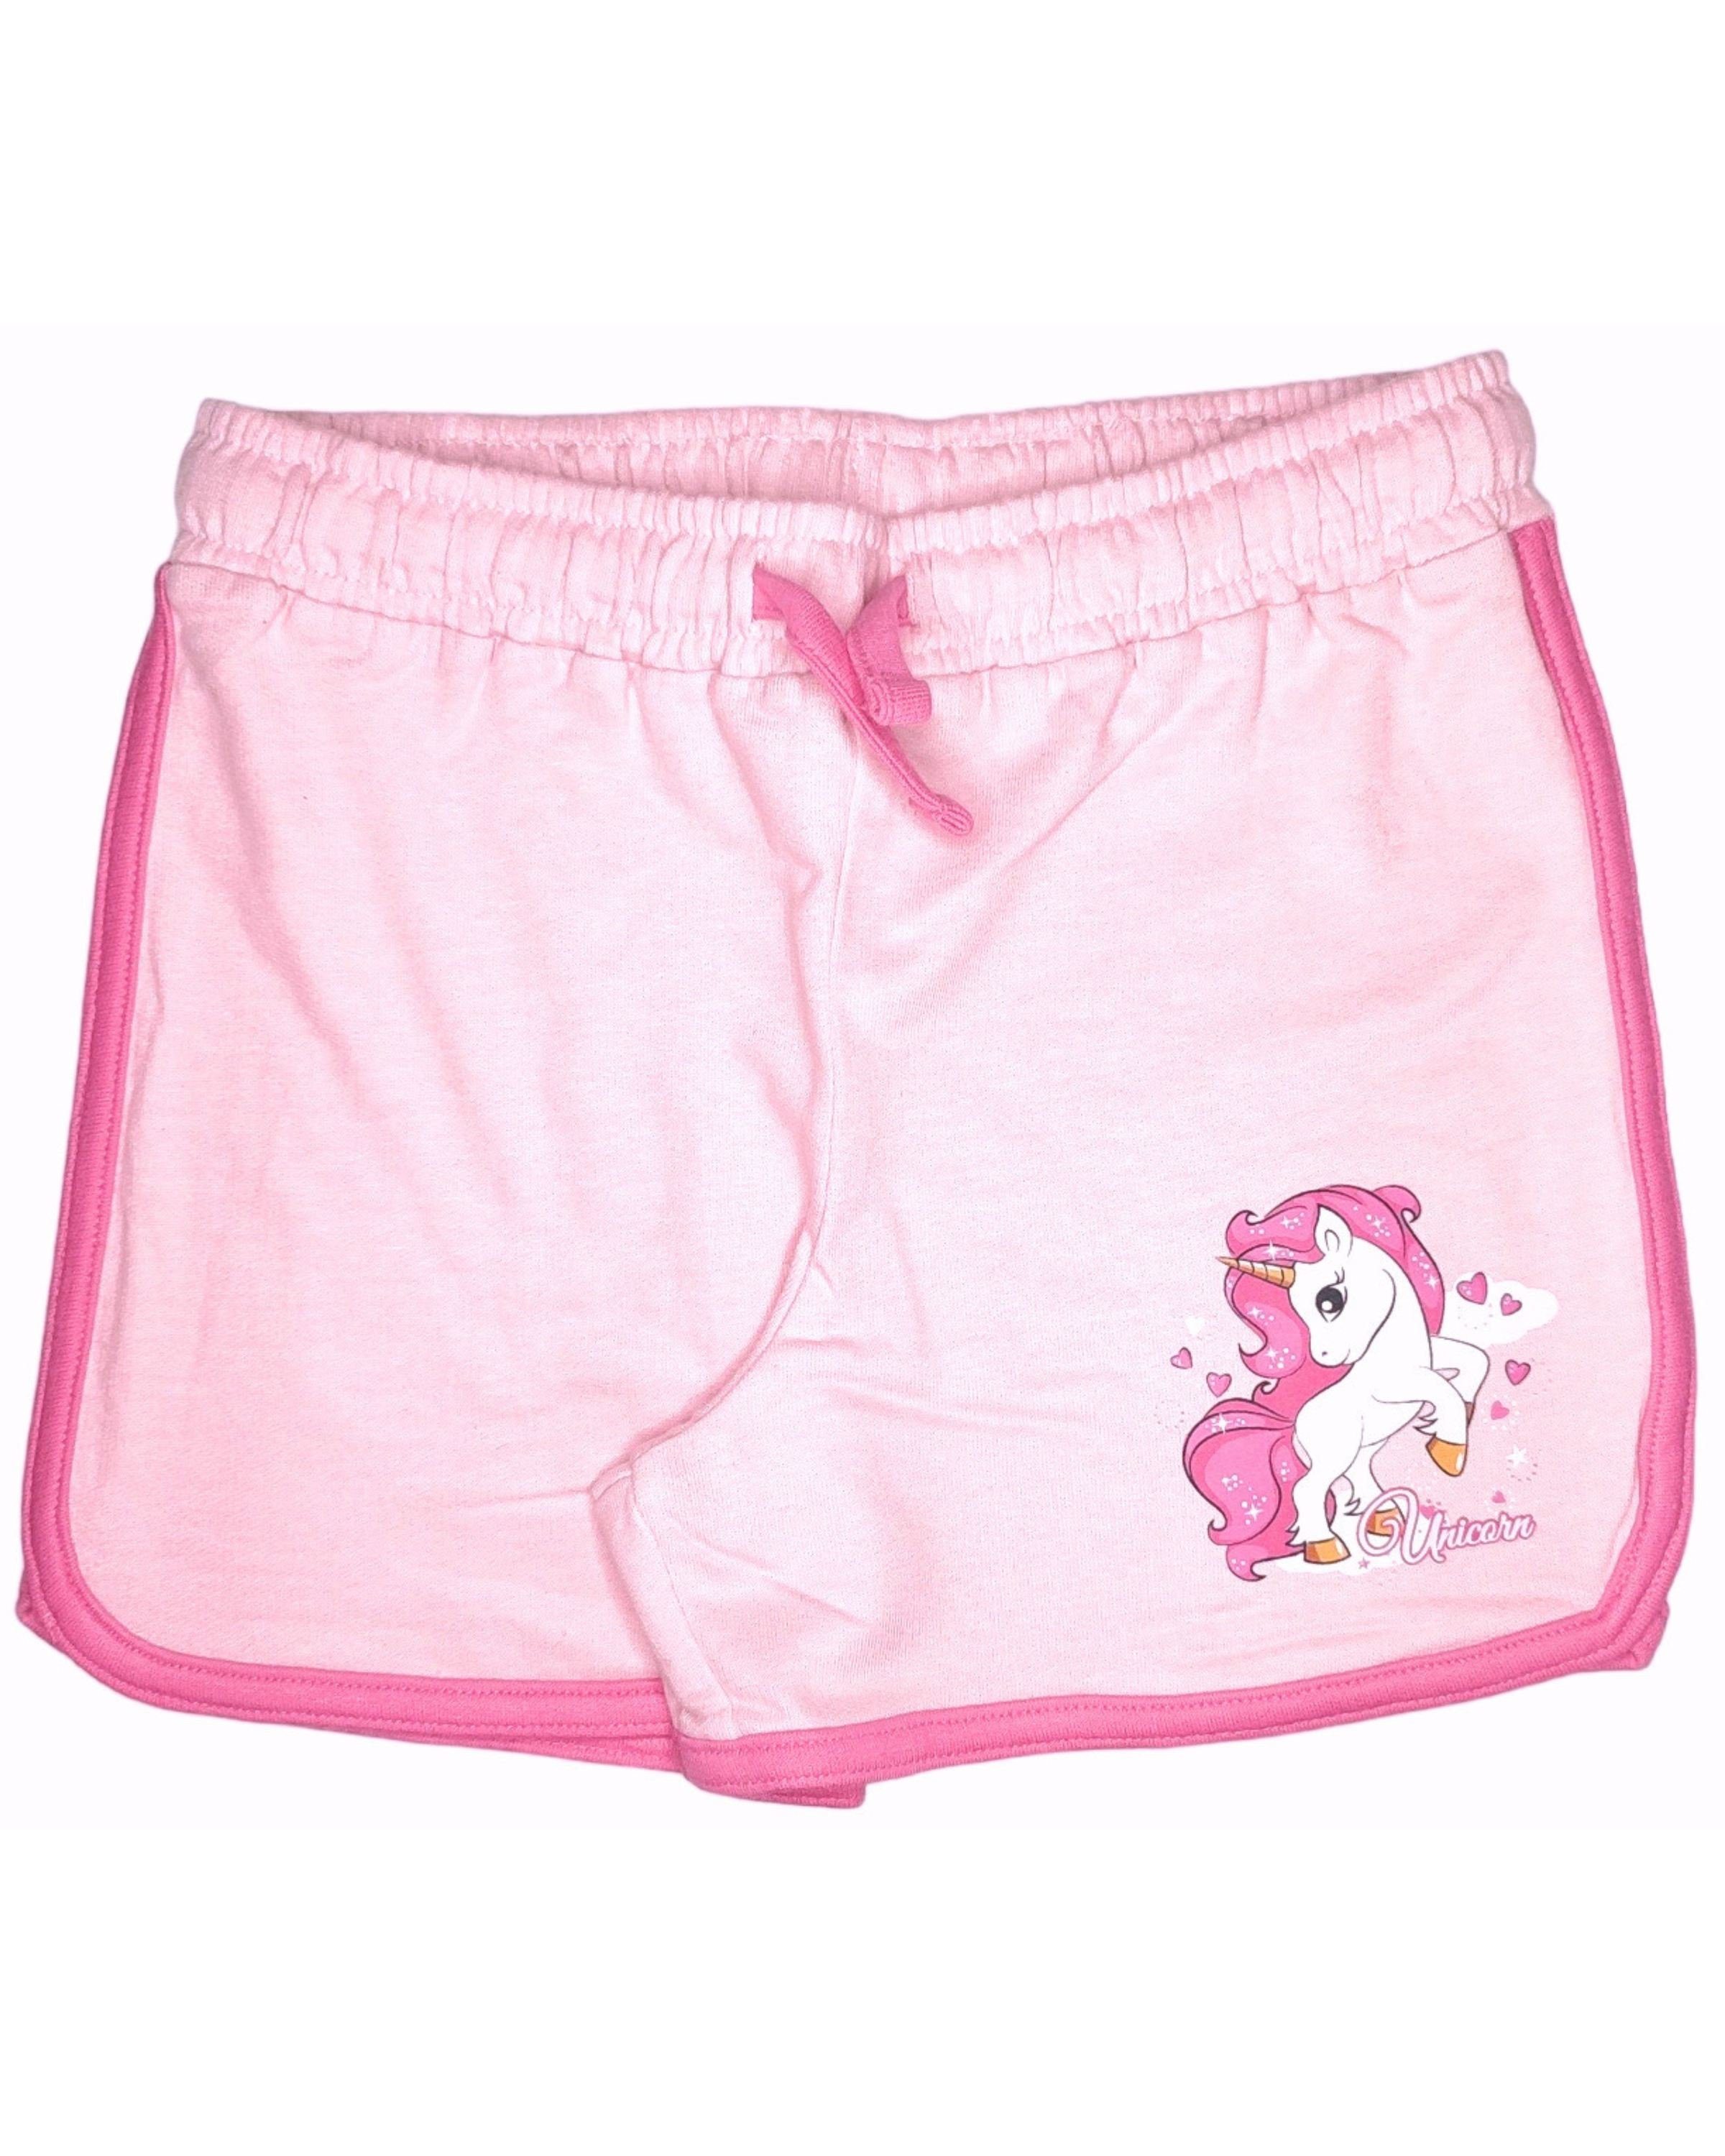 United Essentials Shorts Einhorn Mädchen kurze Hose aus Baumwolle Gr. 98 - 128 cm Rosa | Shorts